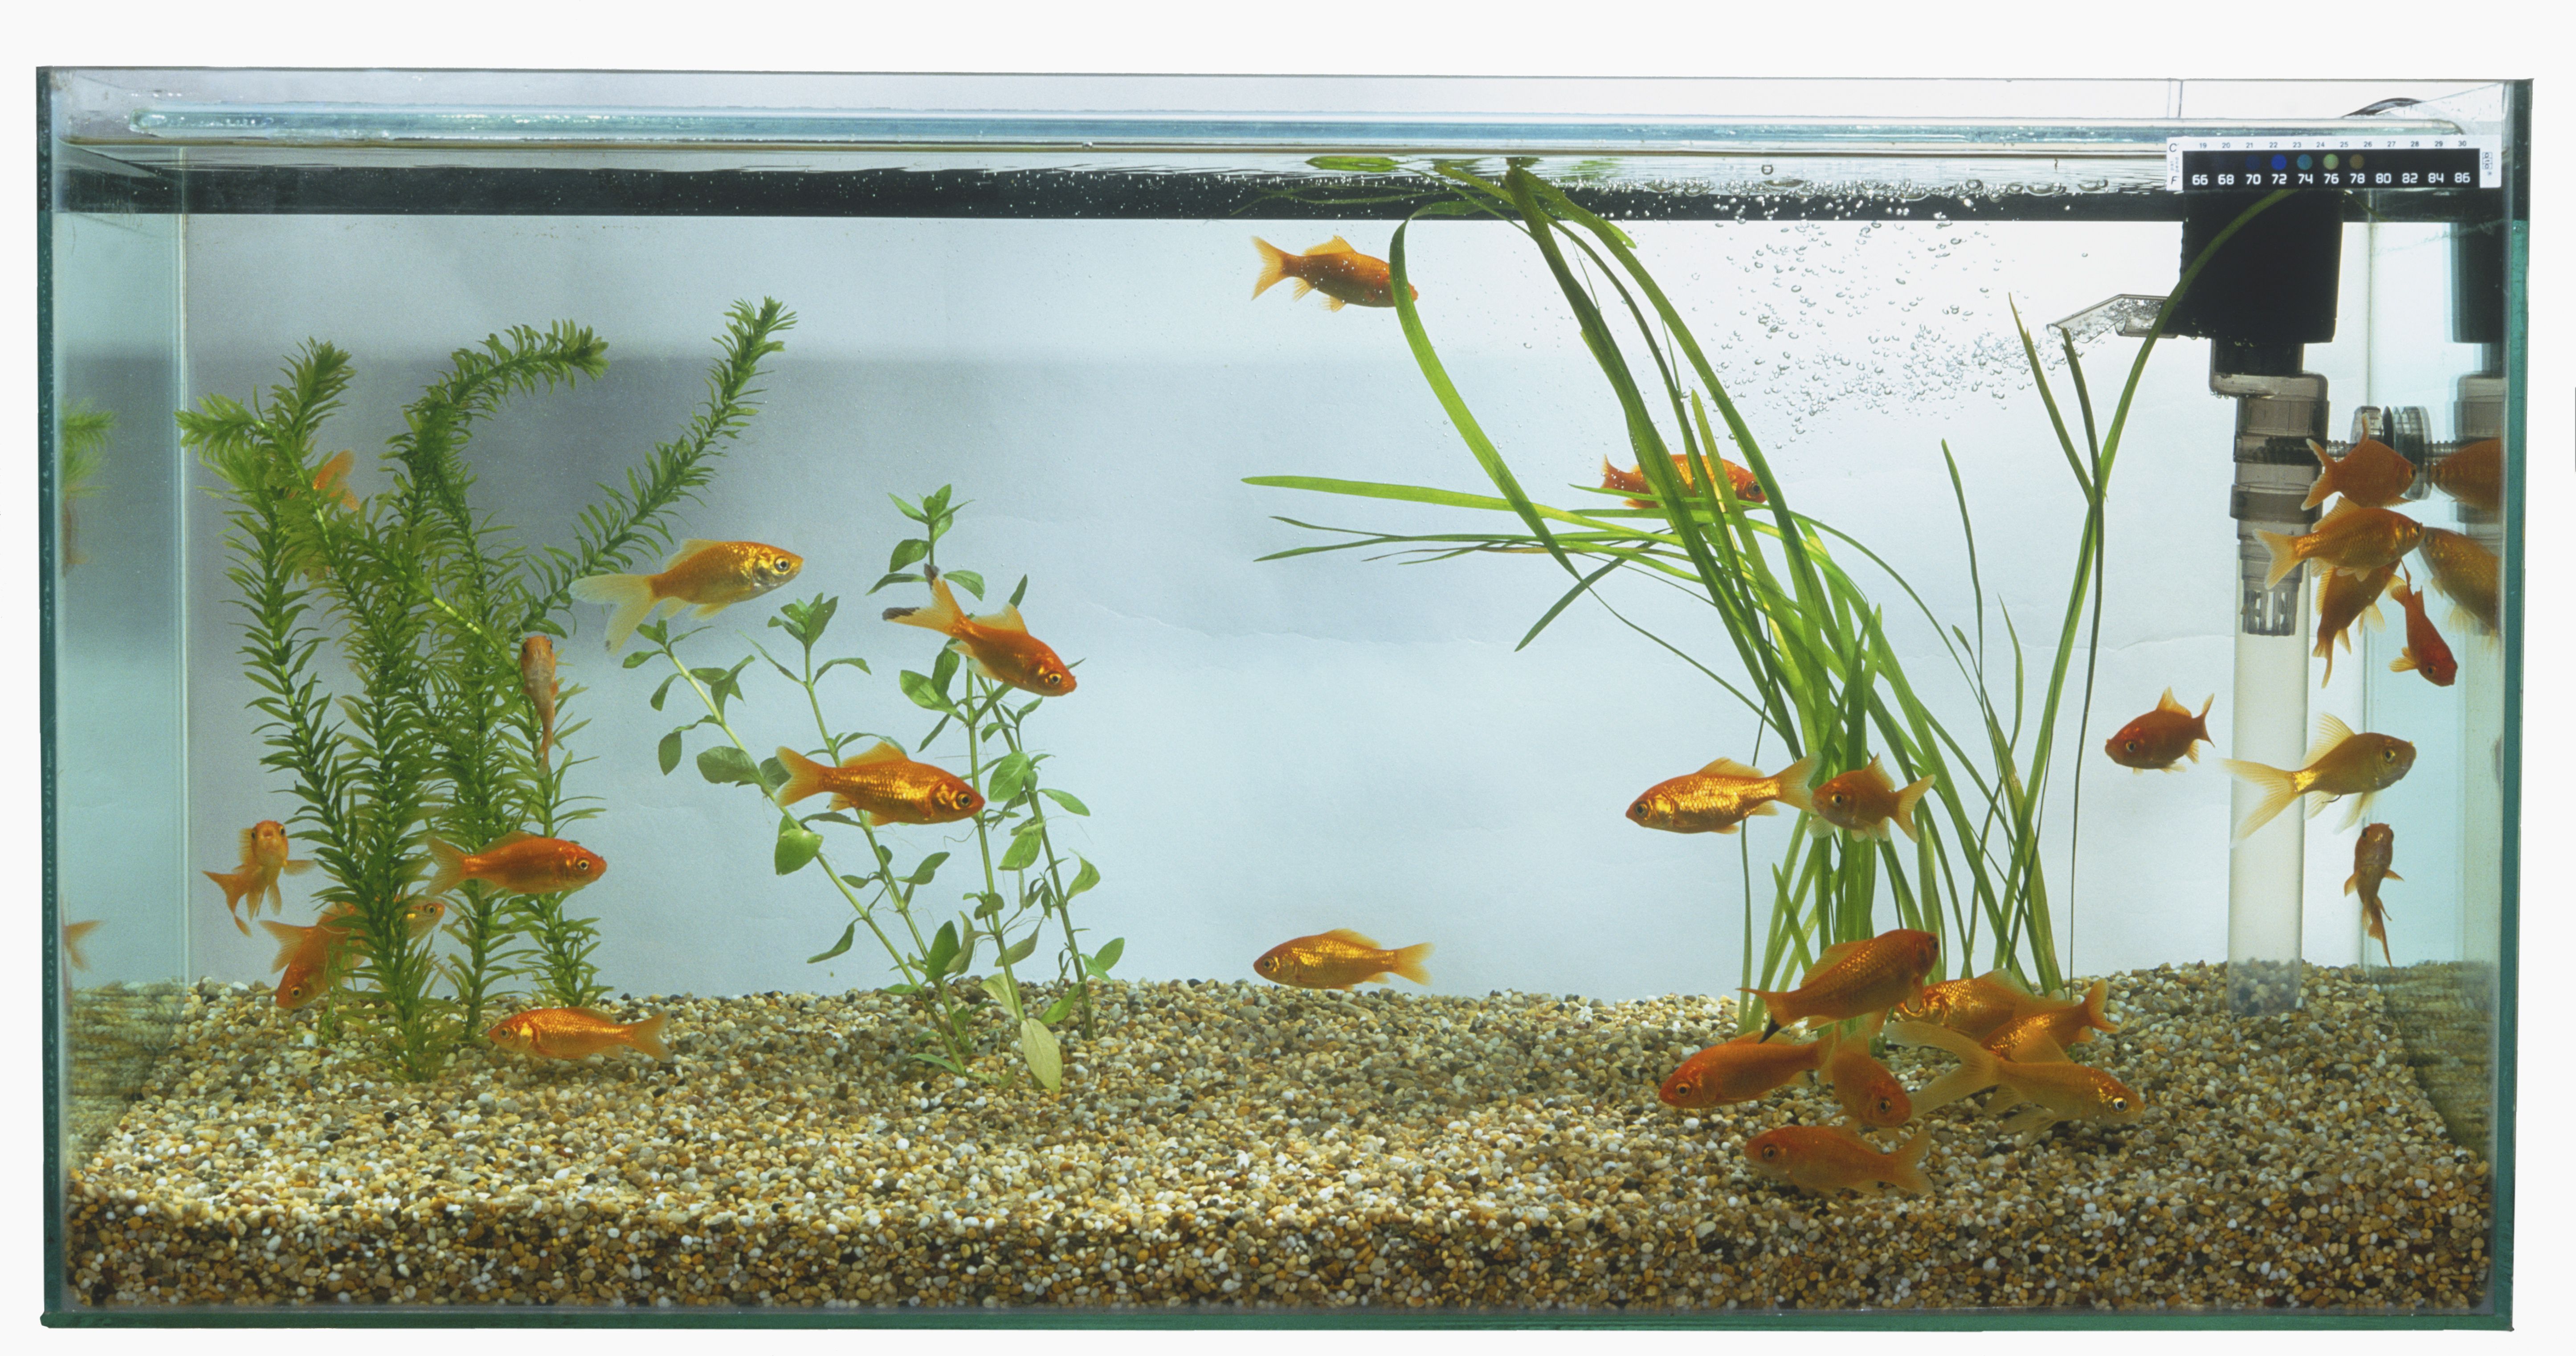 Goldfish (Carassius auratus) swimming in large rectangular fish tank